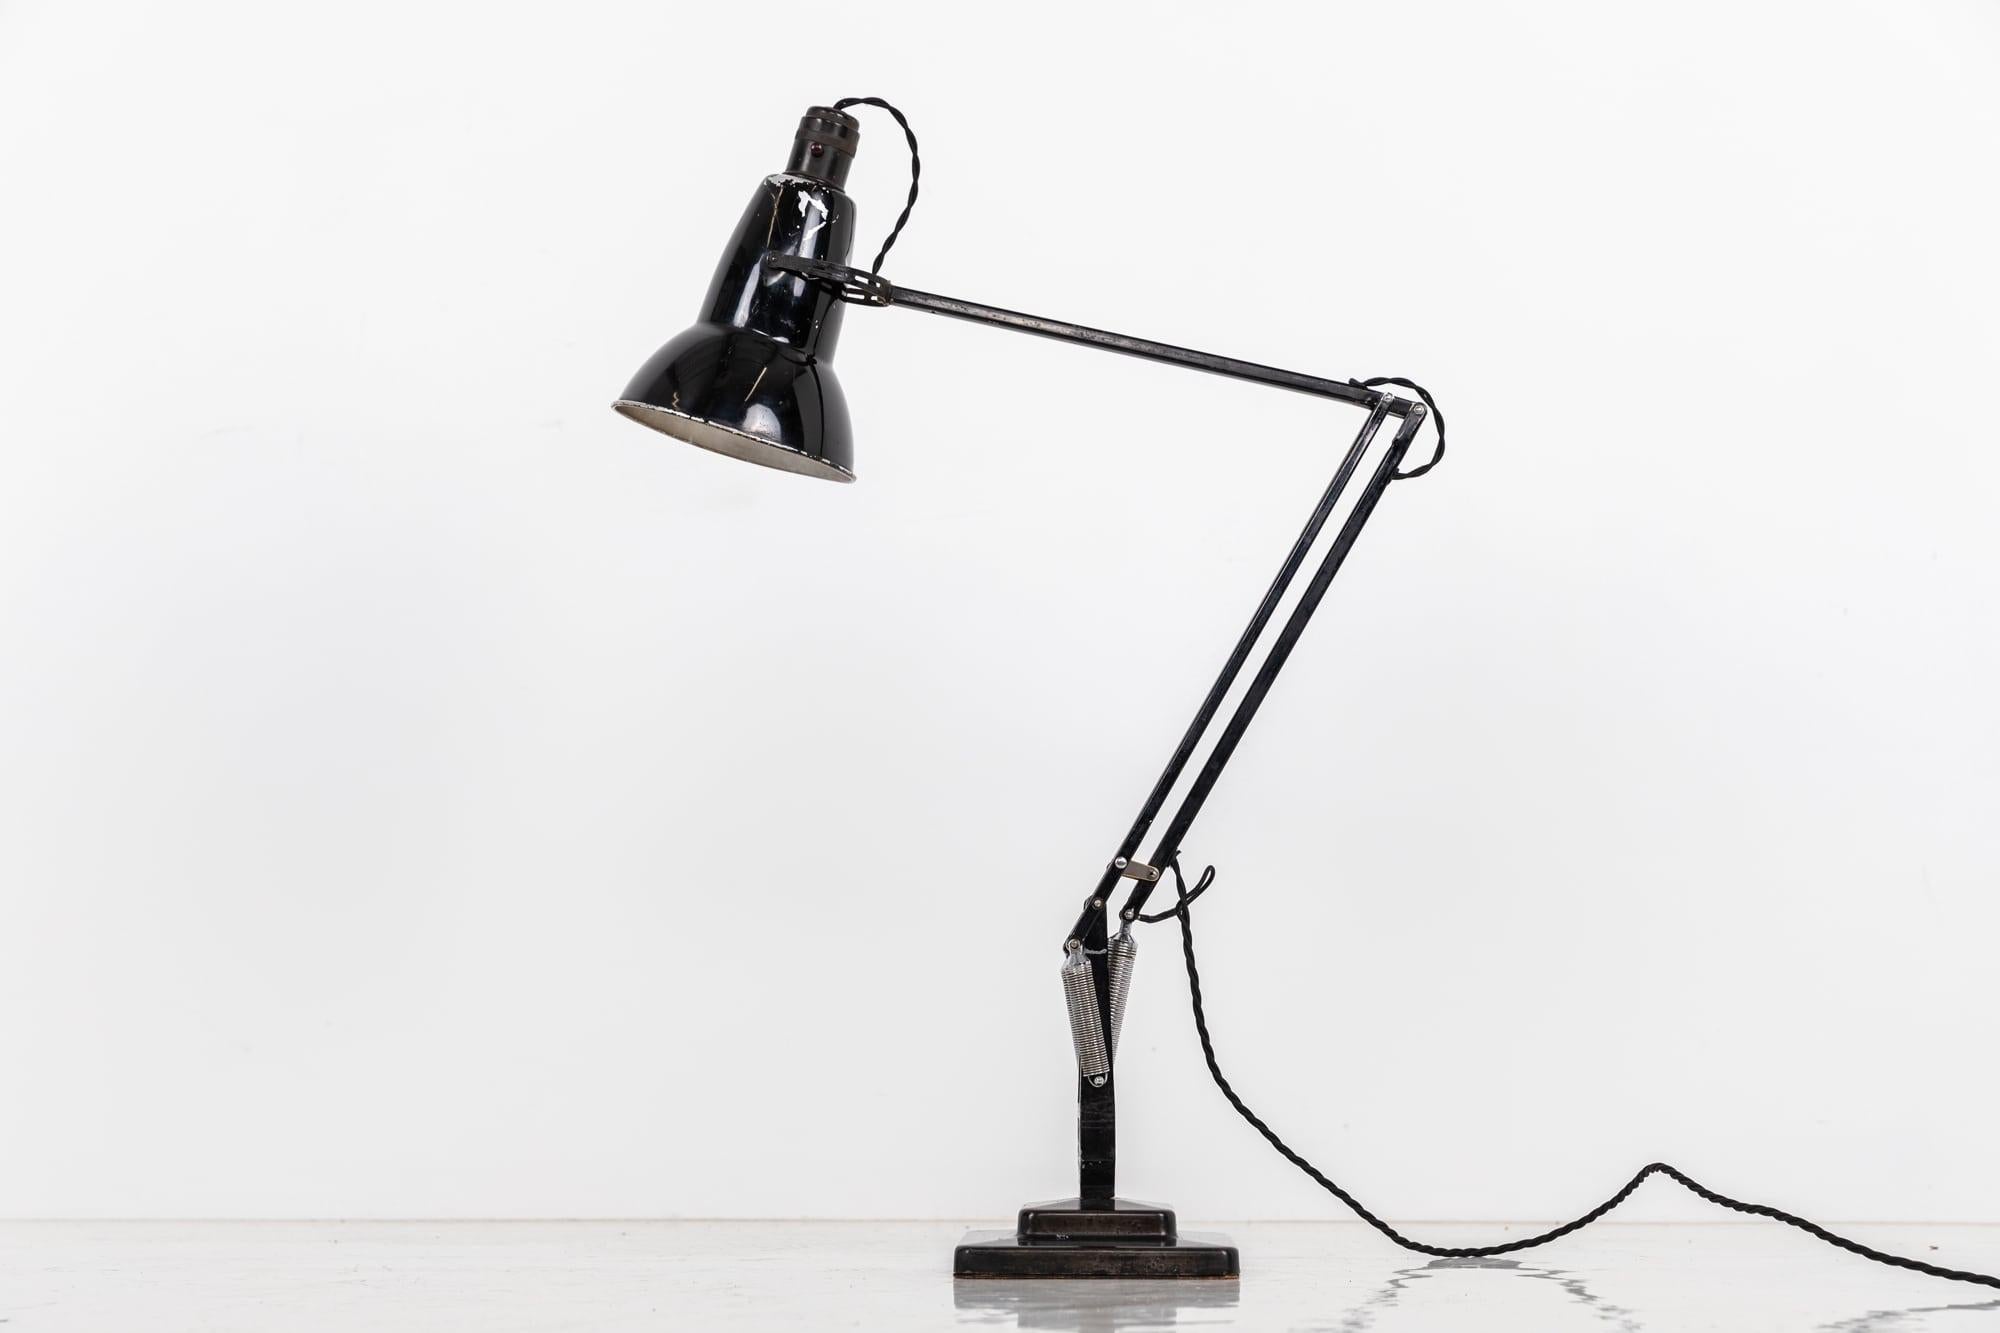 

Ikonische Angelpoise-Lampe, hergestellt von Herbert Terry & Sons, um 1940

Eine der berühmtesten Schreibtischlampen der britischen Industriegeschichte, die auch heute noch hergestellt wird. Vollständiger Originalzustand, einschließlich des